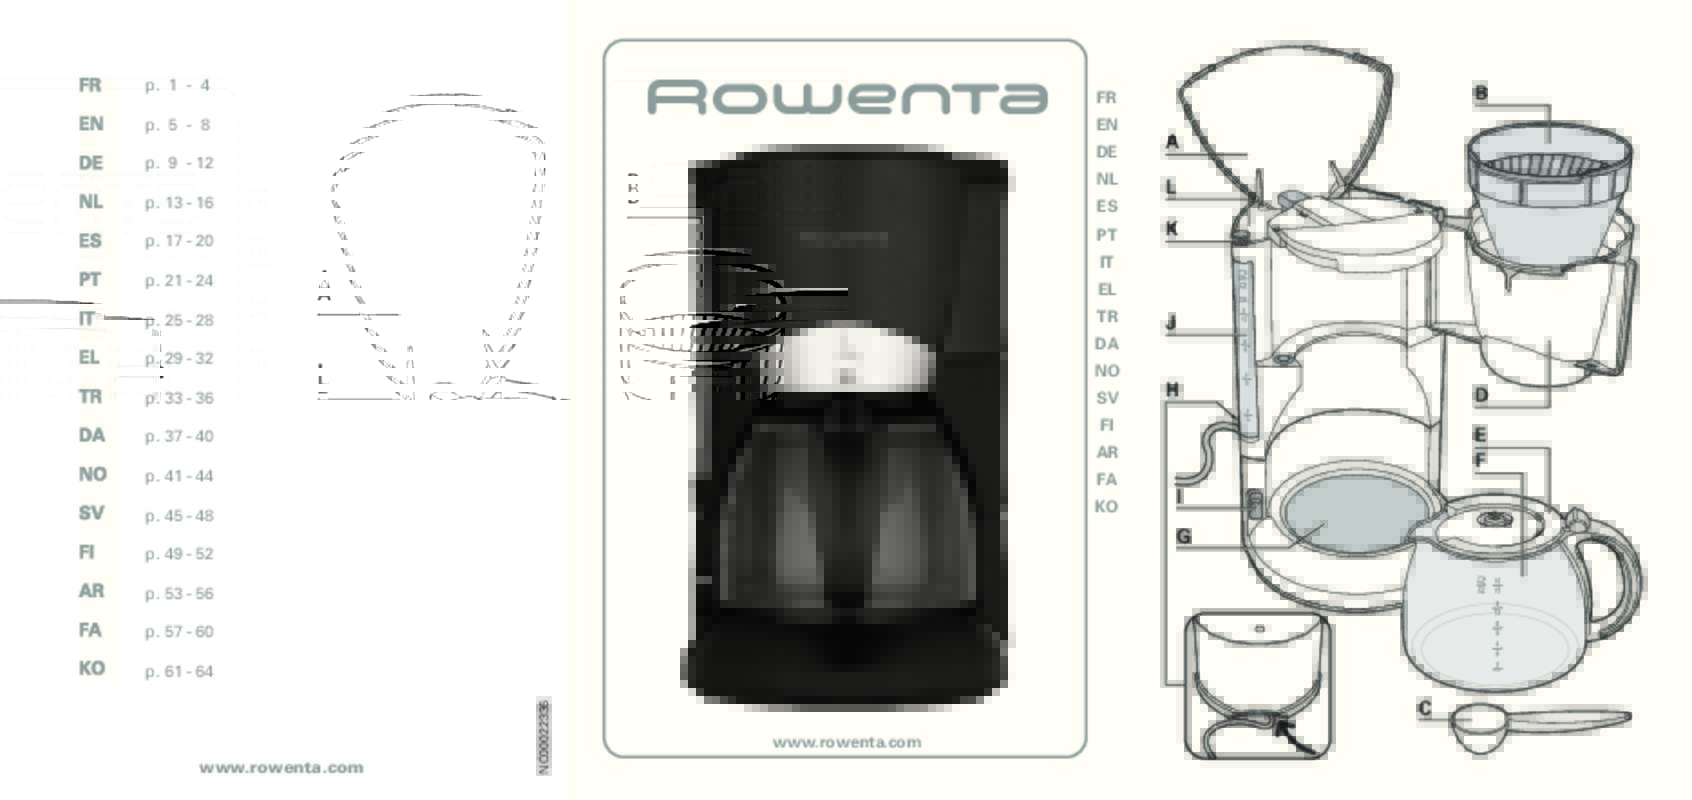 Особенности работы и обзор кофеварки rowenta